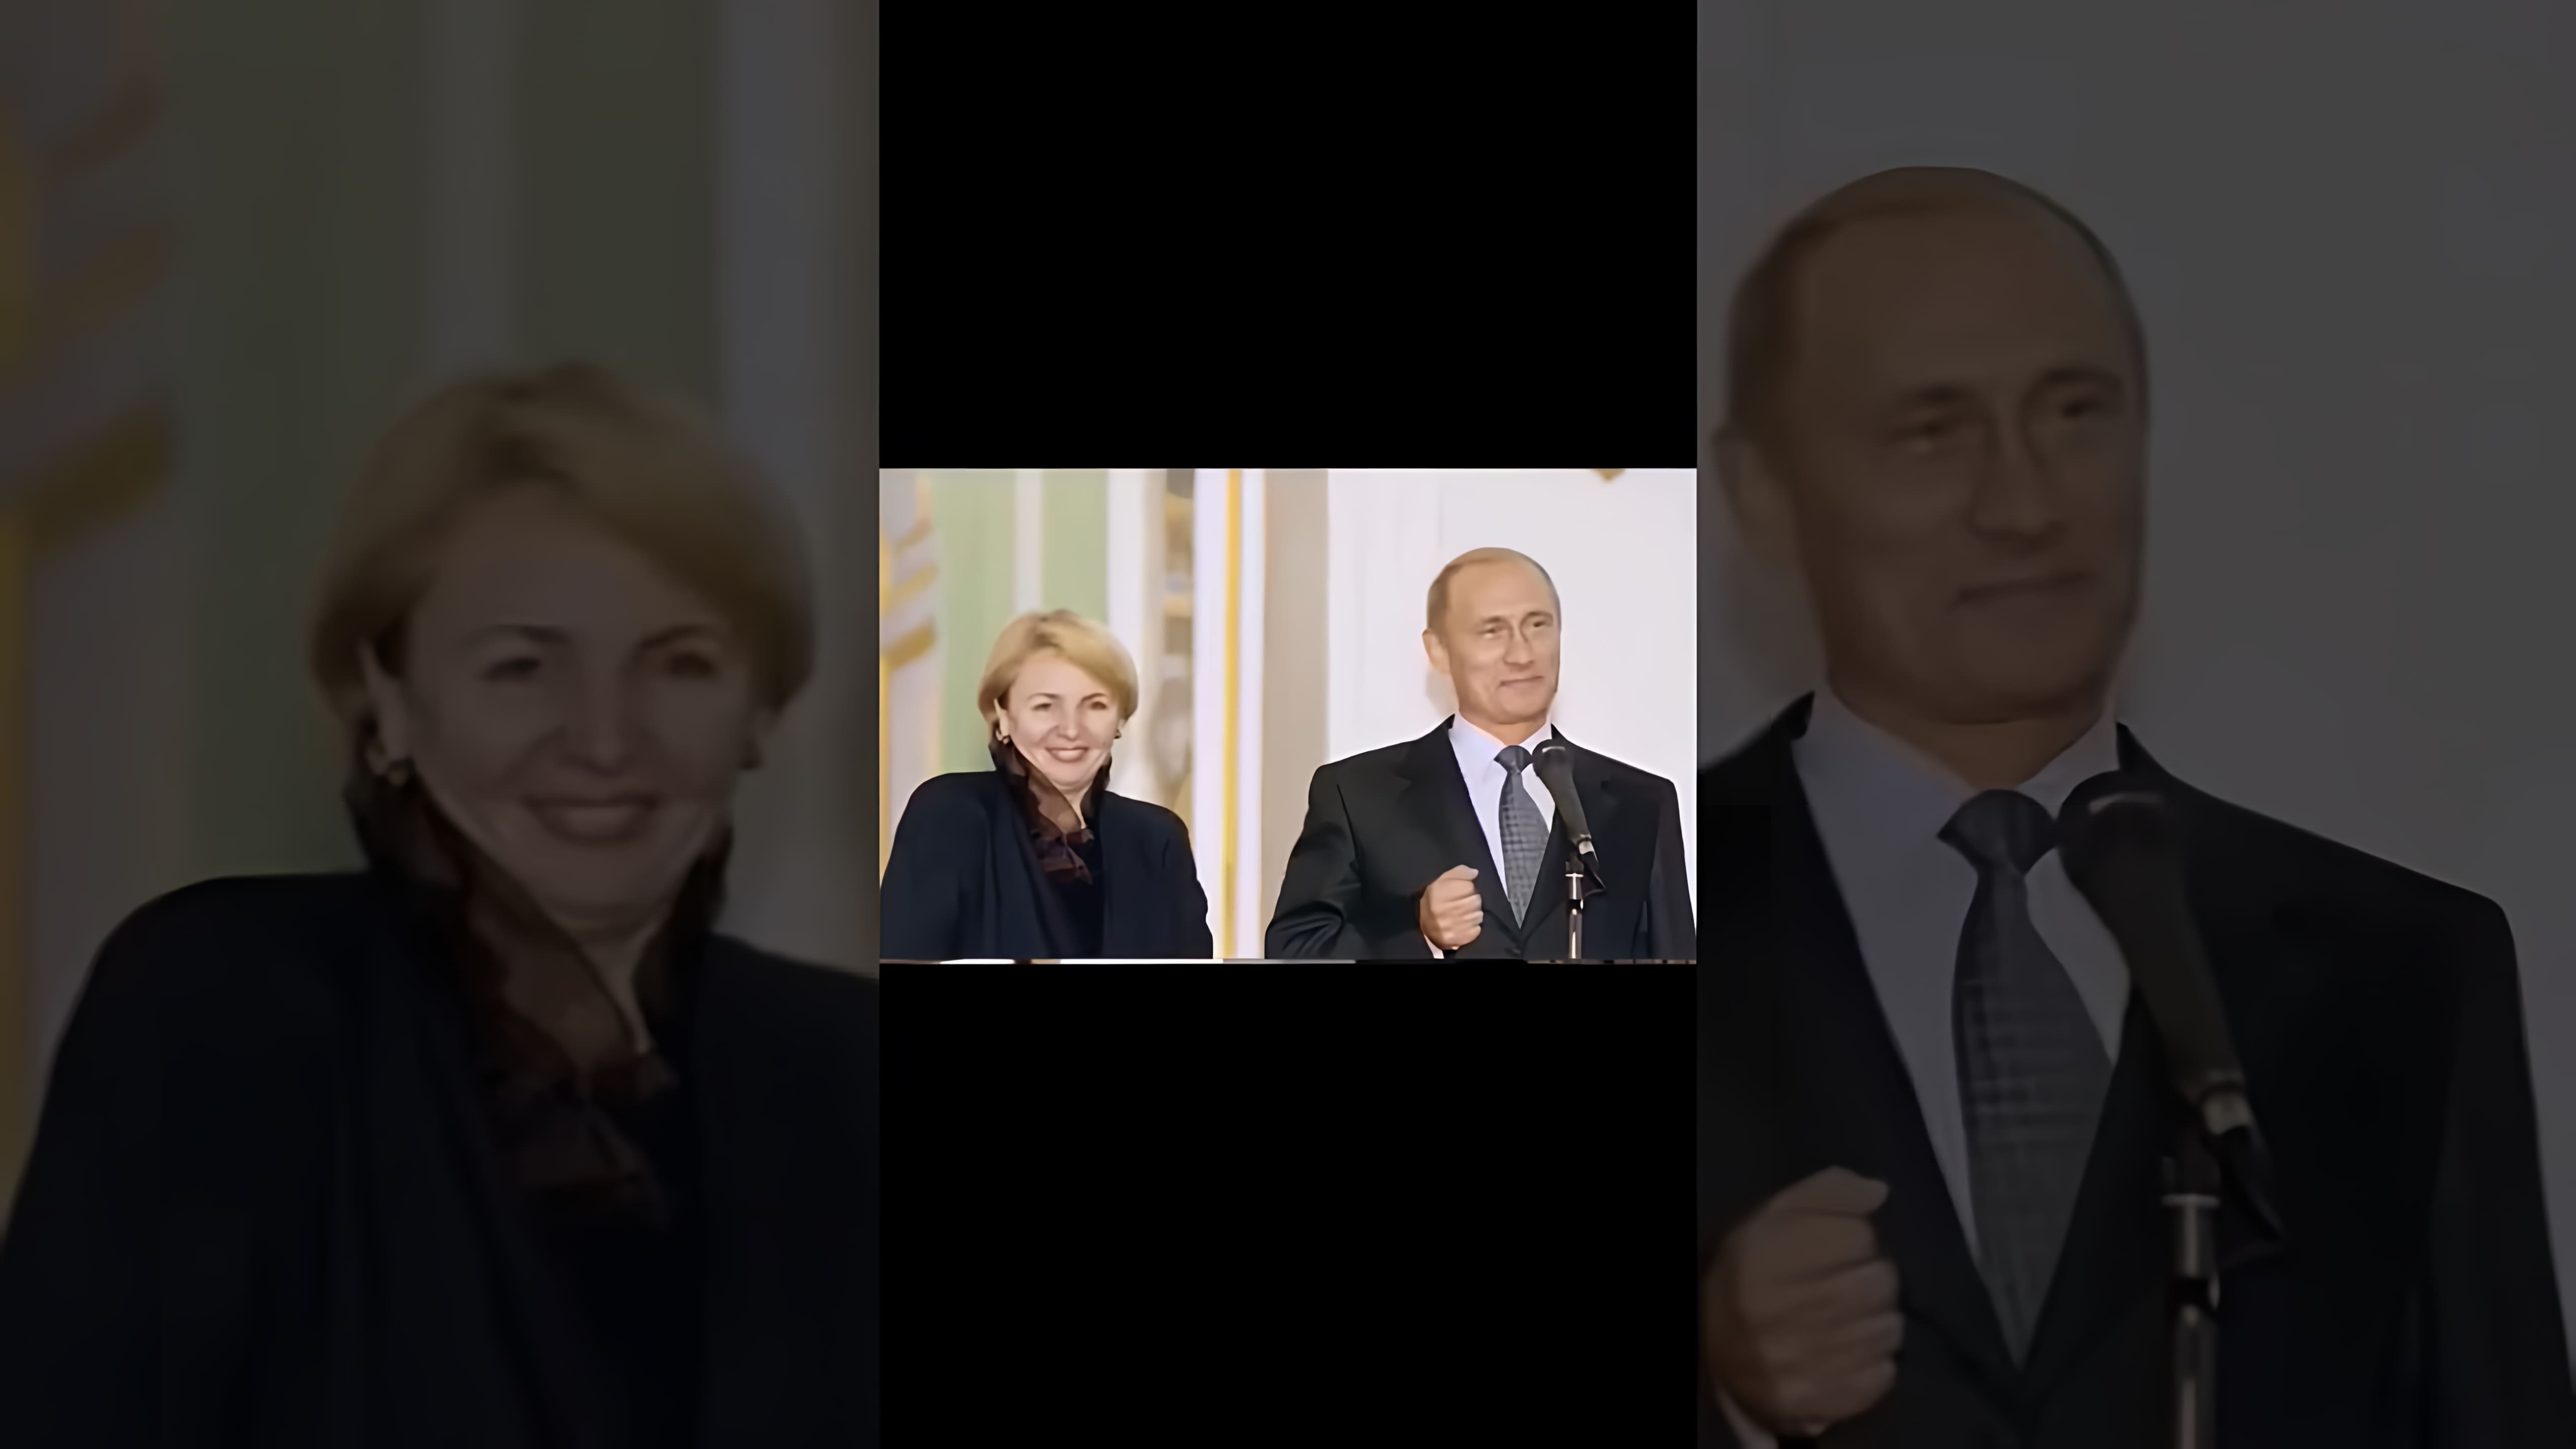 Видео: Редкие кадры Путина с женой #путин #президент #shorts